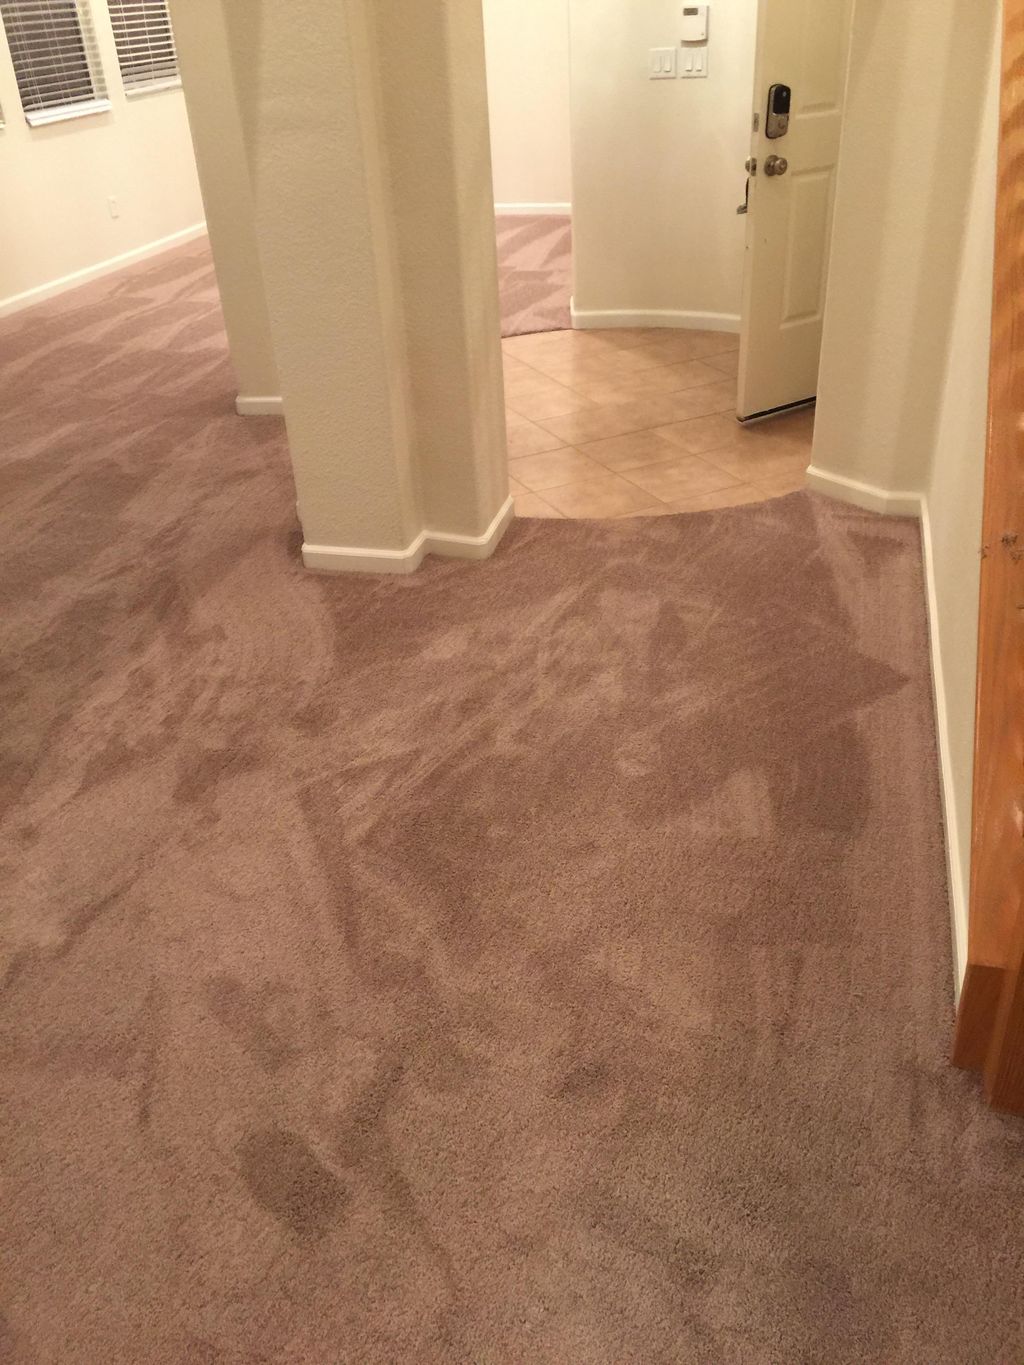 Carpet installer